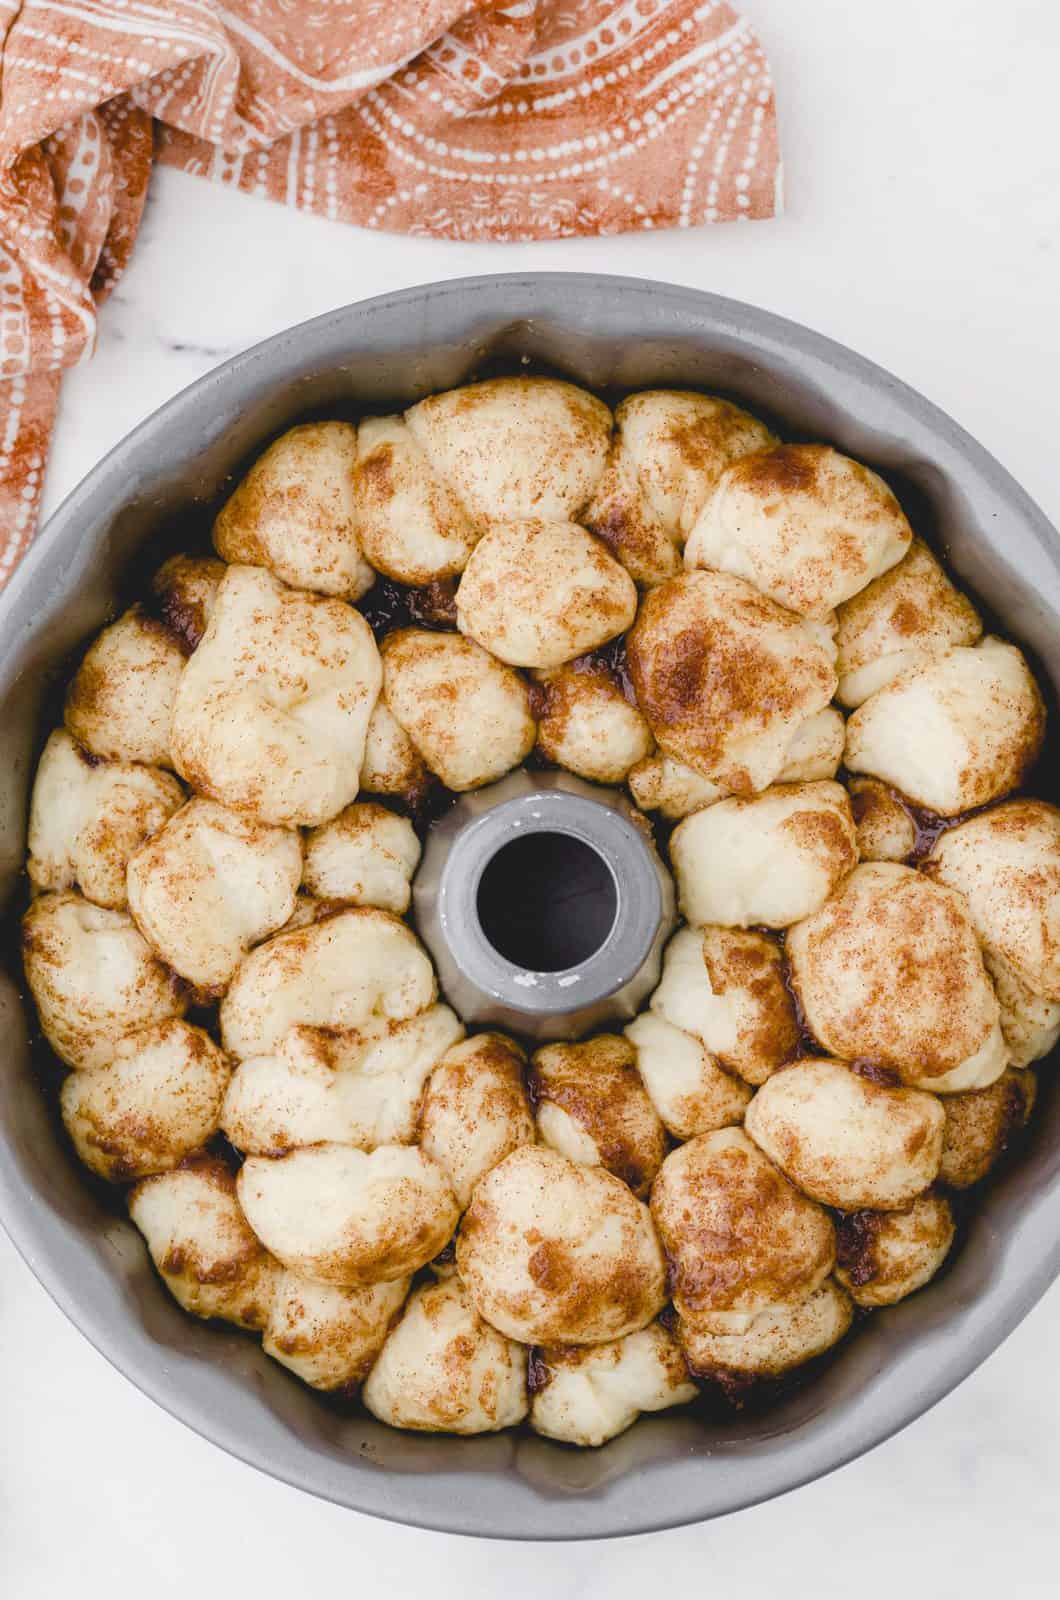 Risen dough in bundt pan.